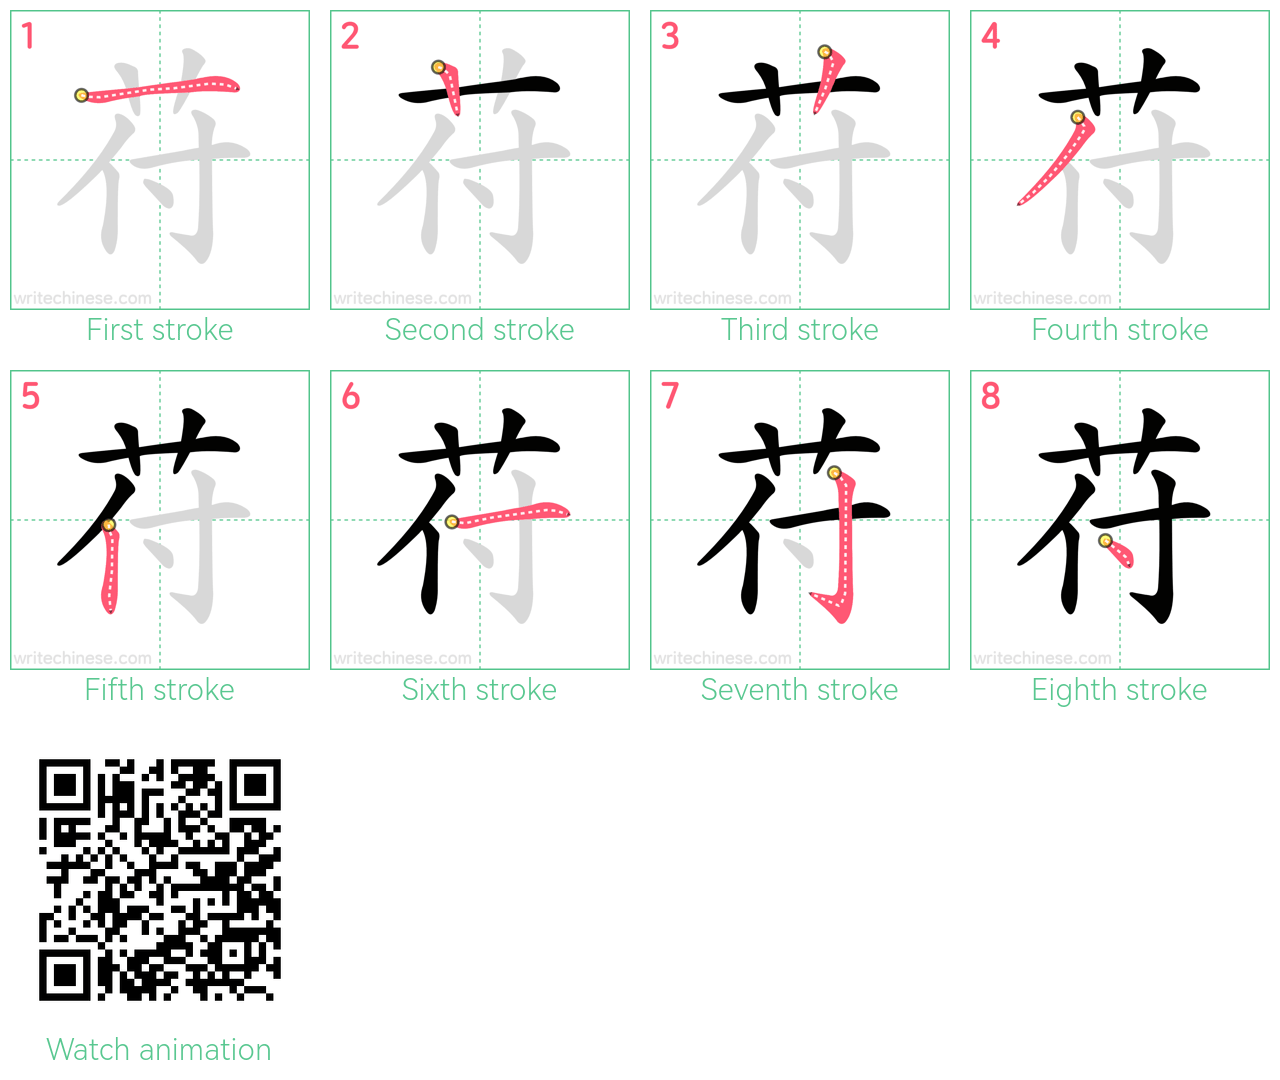 苻 step-by-step stroke order diagrams